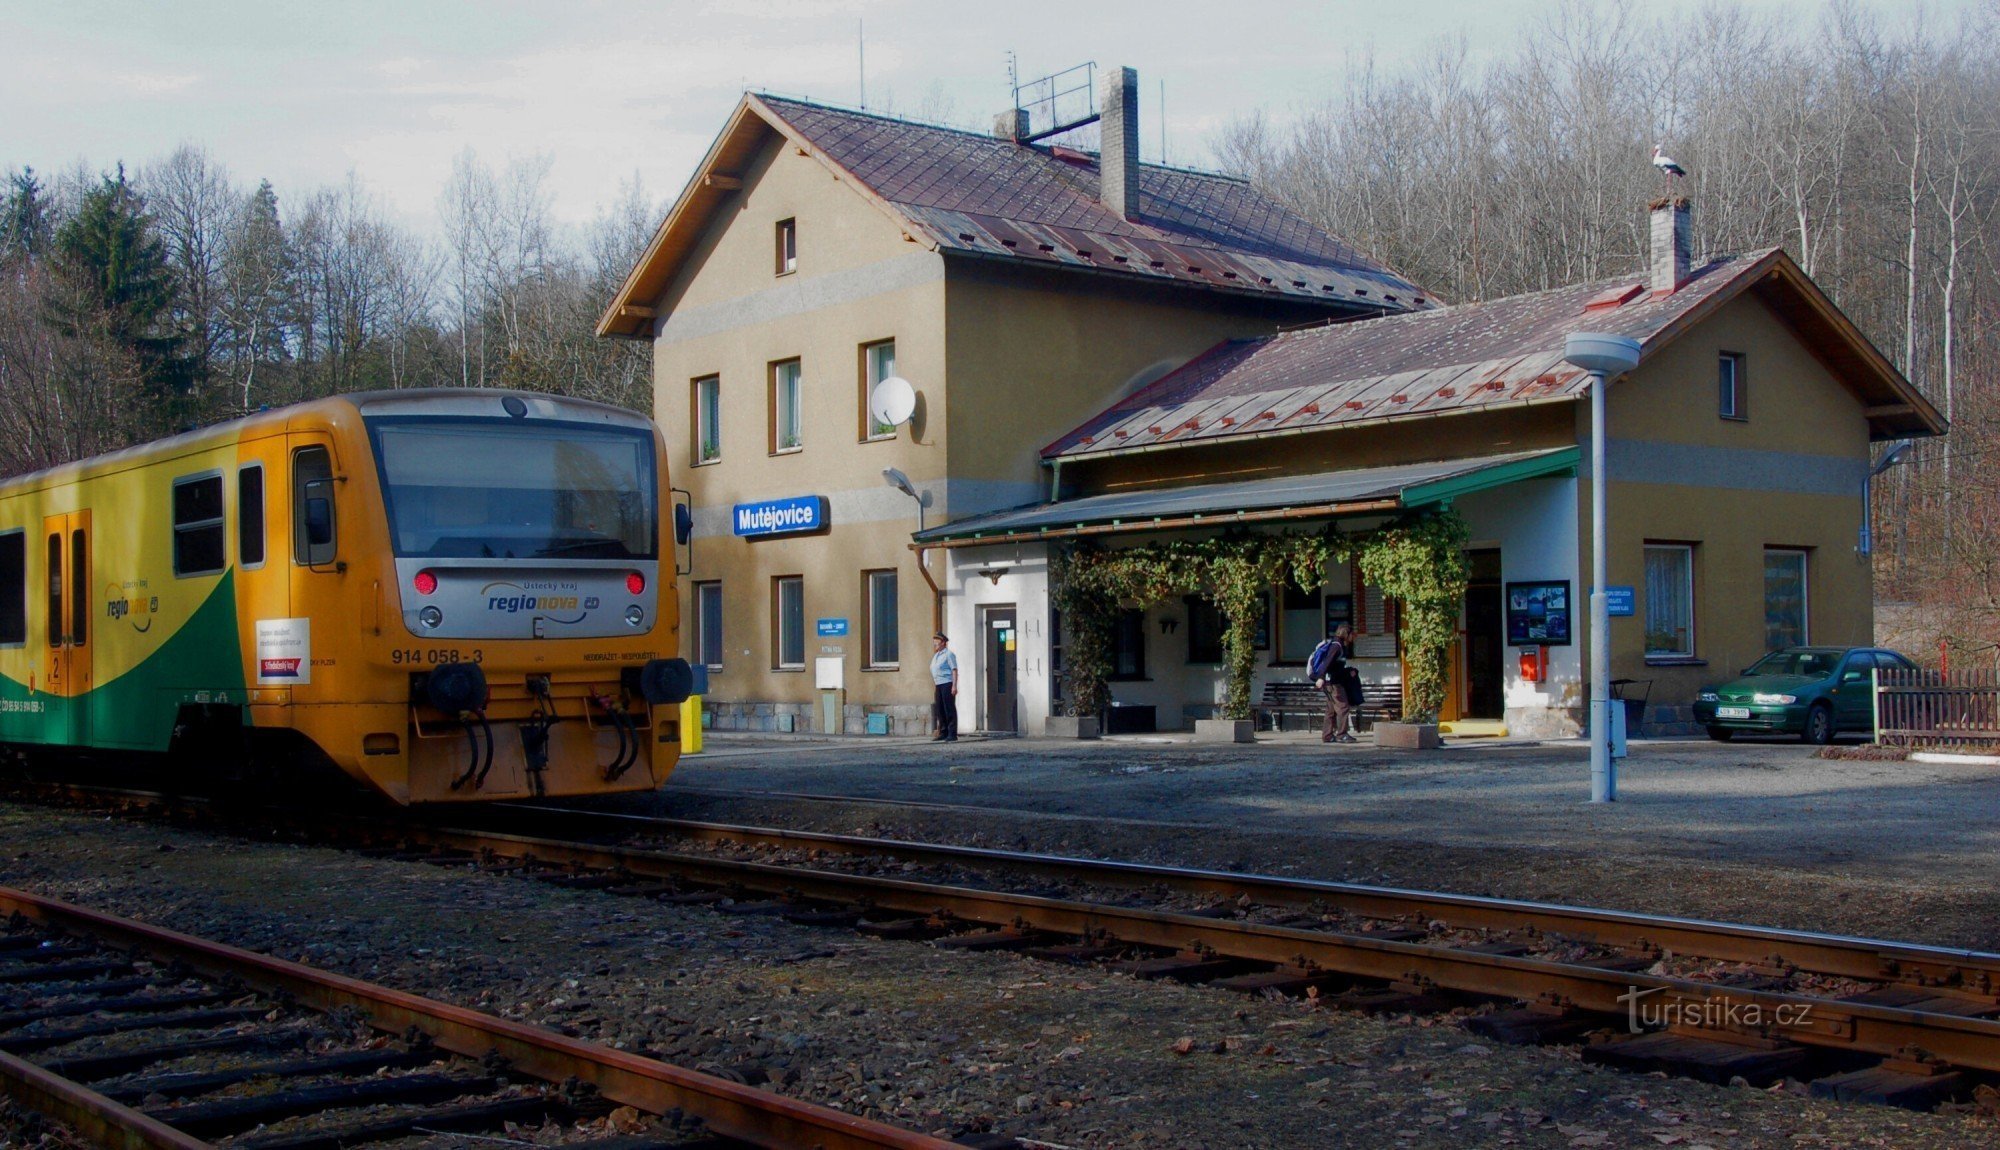 Dworzec kolejowy w Mutějovicach